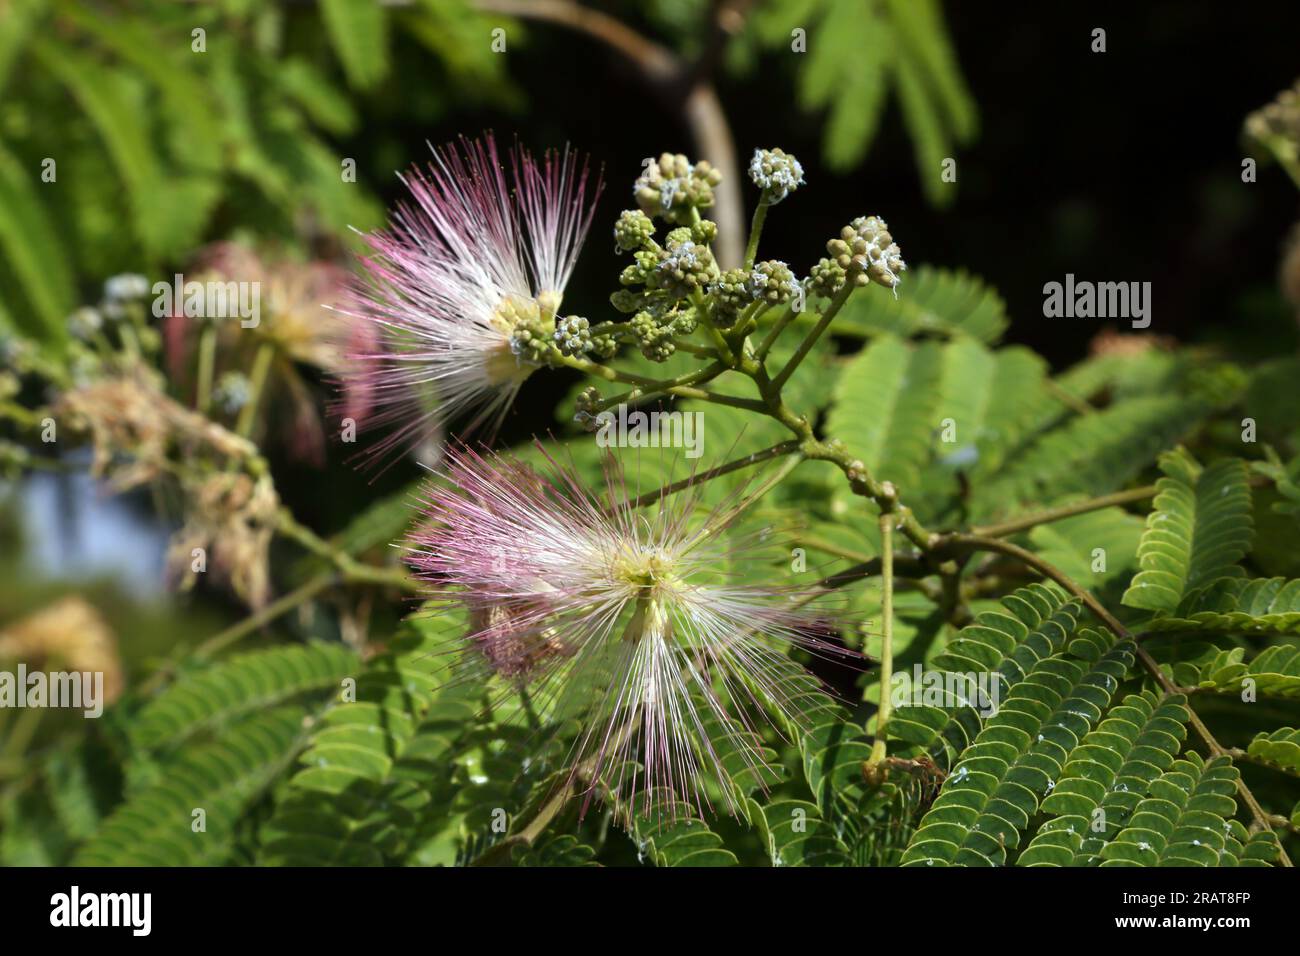 Vouliagmeni Grecia Attica Pink Powder Puff (Calliandra surinamensis) Foto de stock